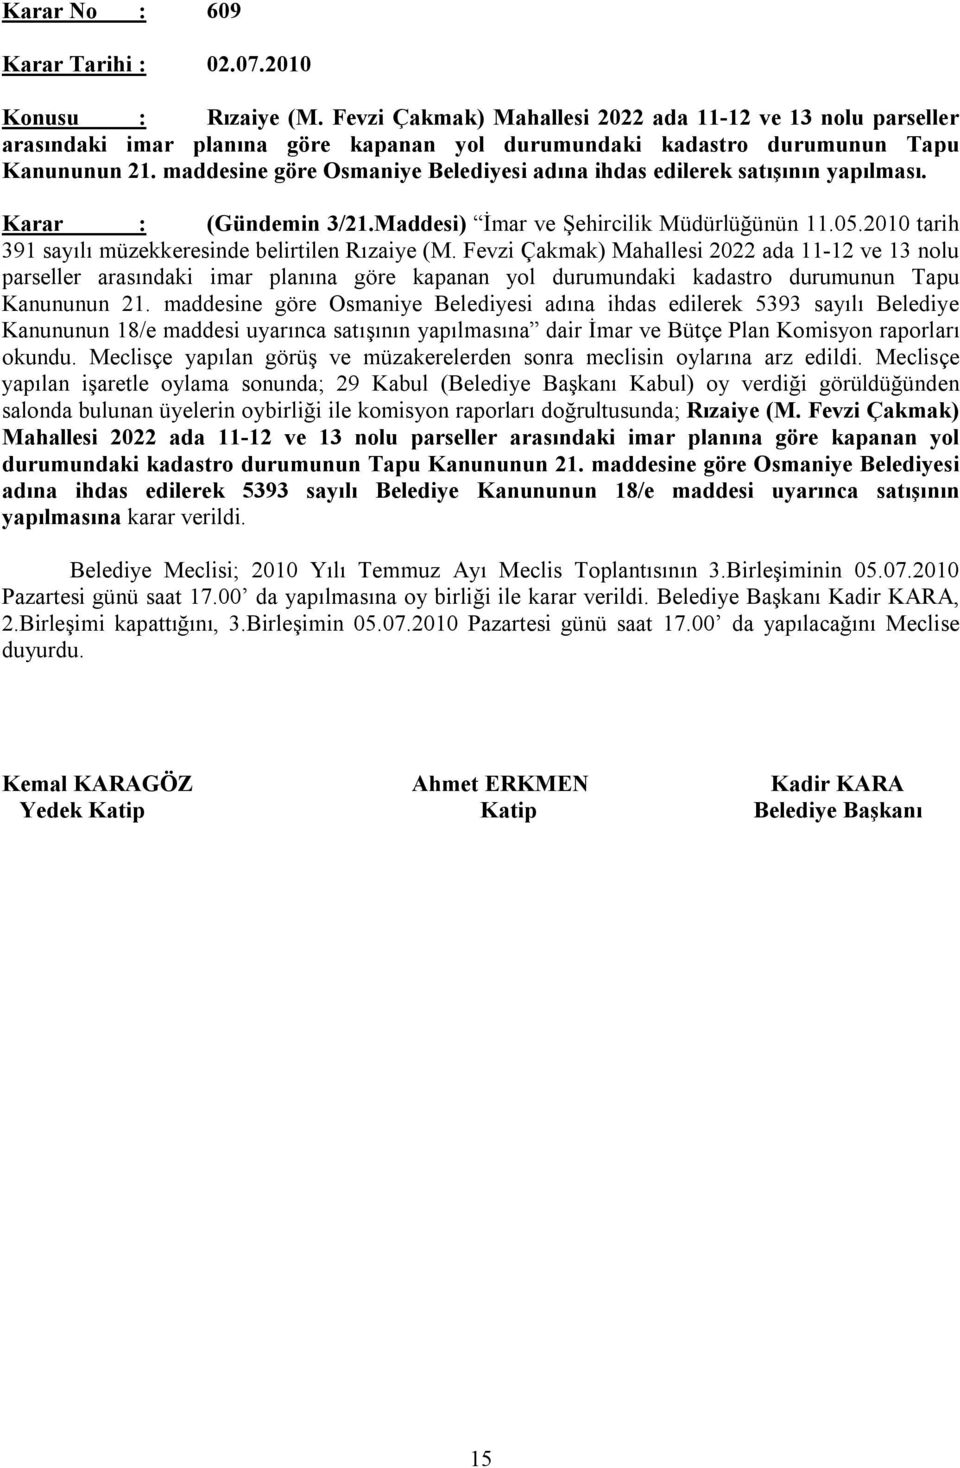 2010 tarih 391 sayılı müzekkeresinde belirtilen Rızaiye (M.